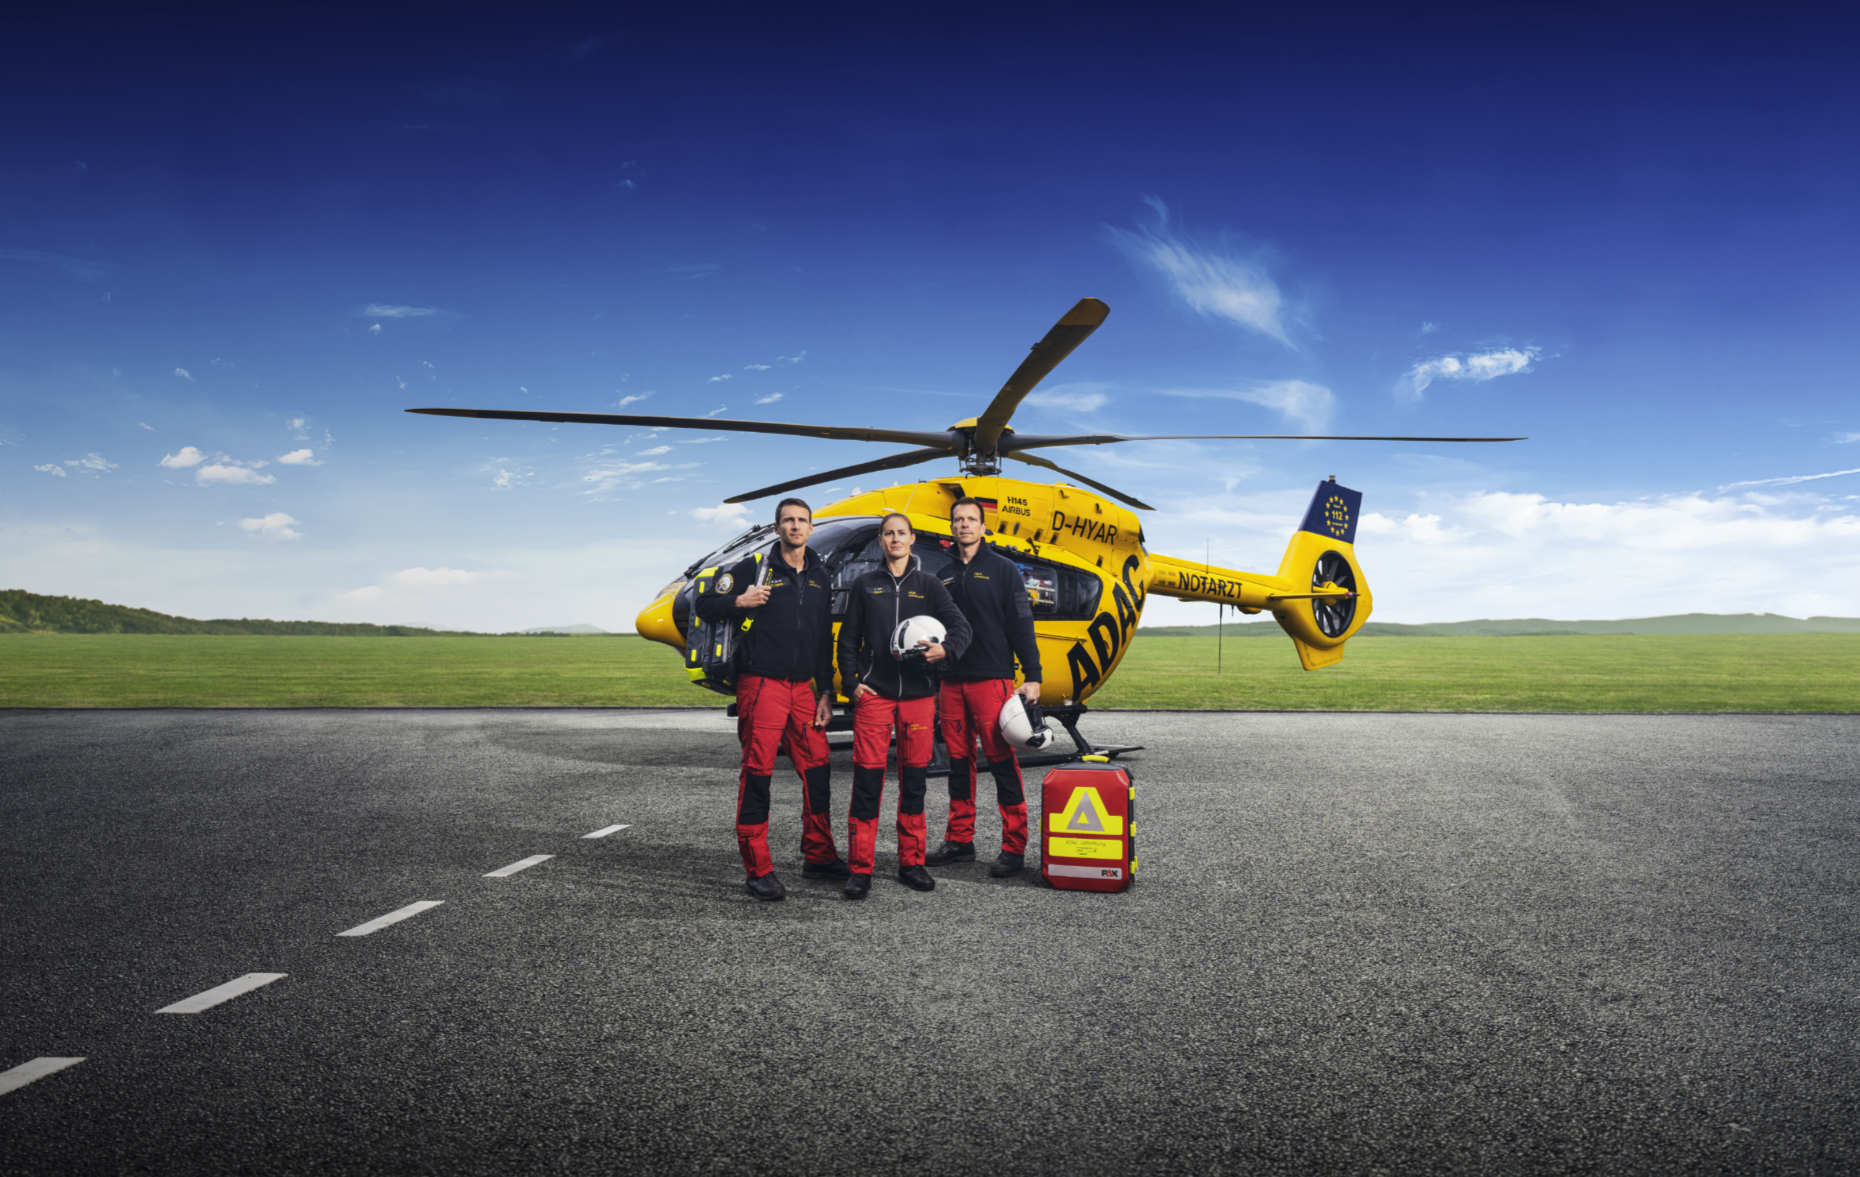 ADAC Luftrettung Mannschaft bestehend aus Pilotin, Arzt und Rettungssanitäter stehen in heroischer Pose vor dem  Christoph H145 Hubschrauber